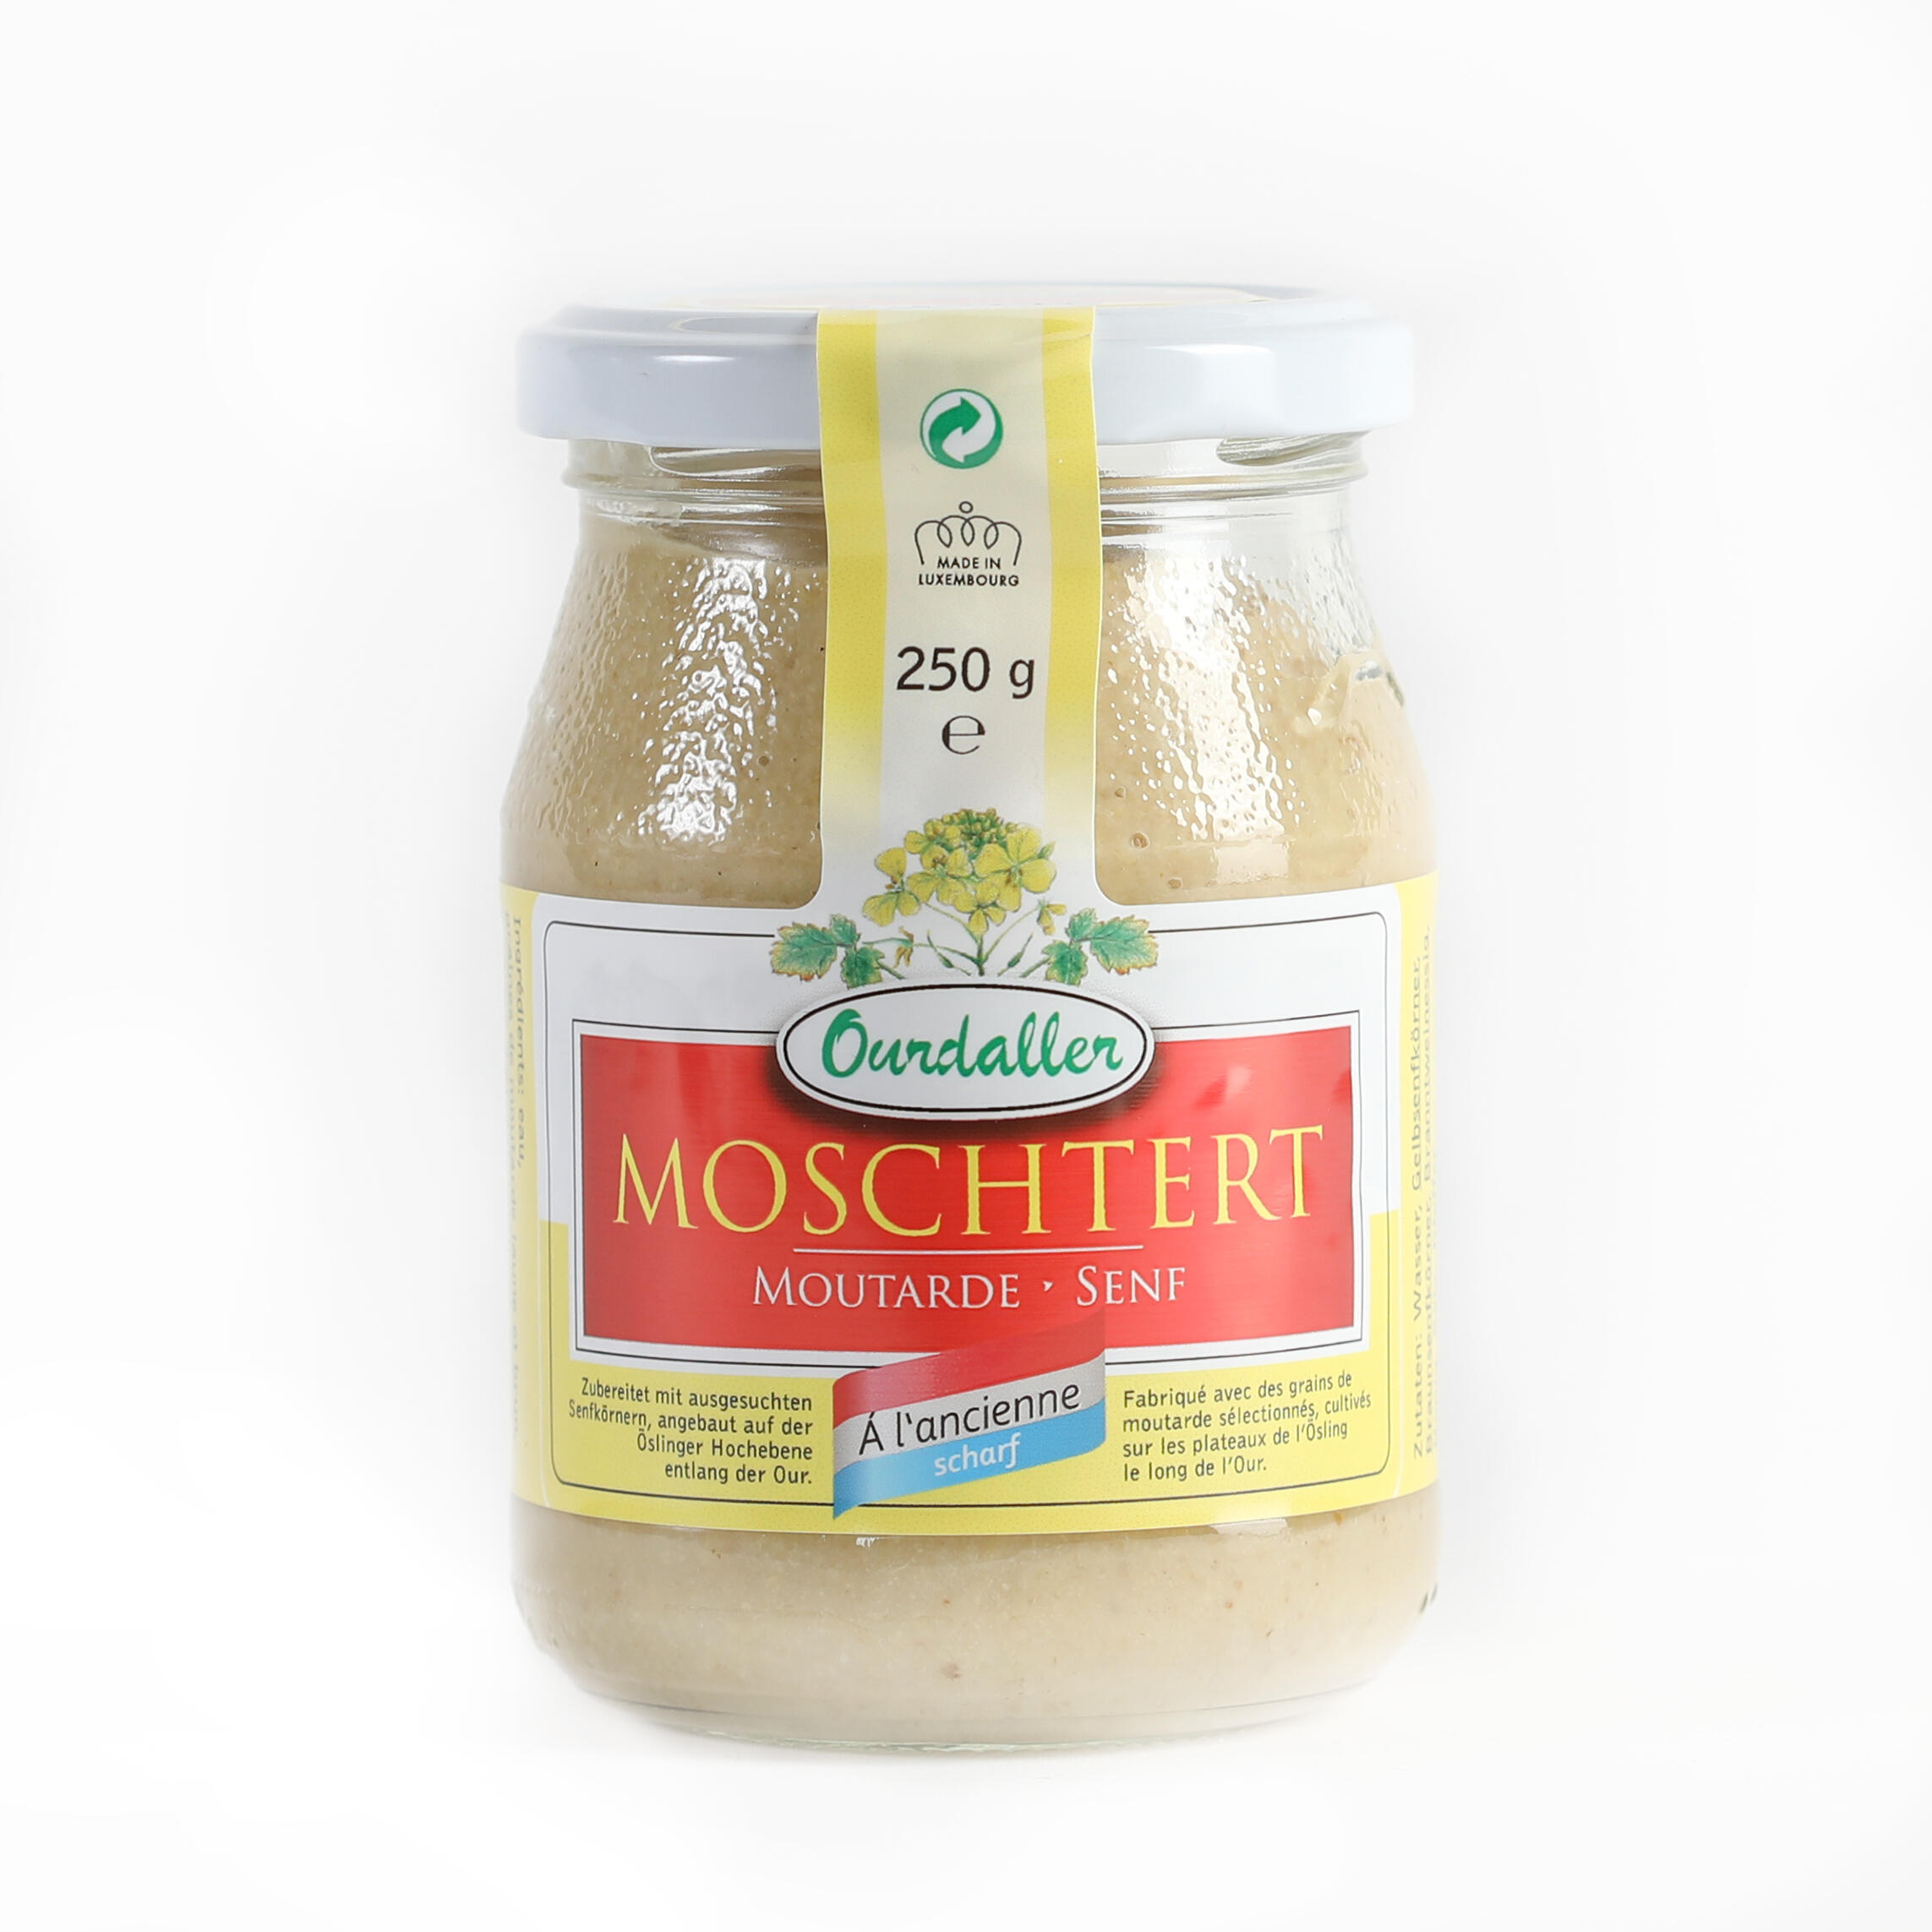 Moschtert - Mustard "ANCIENNE